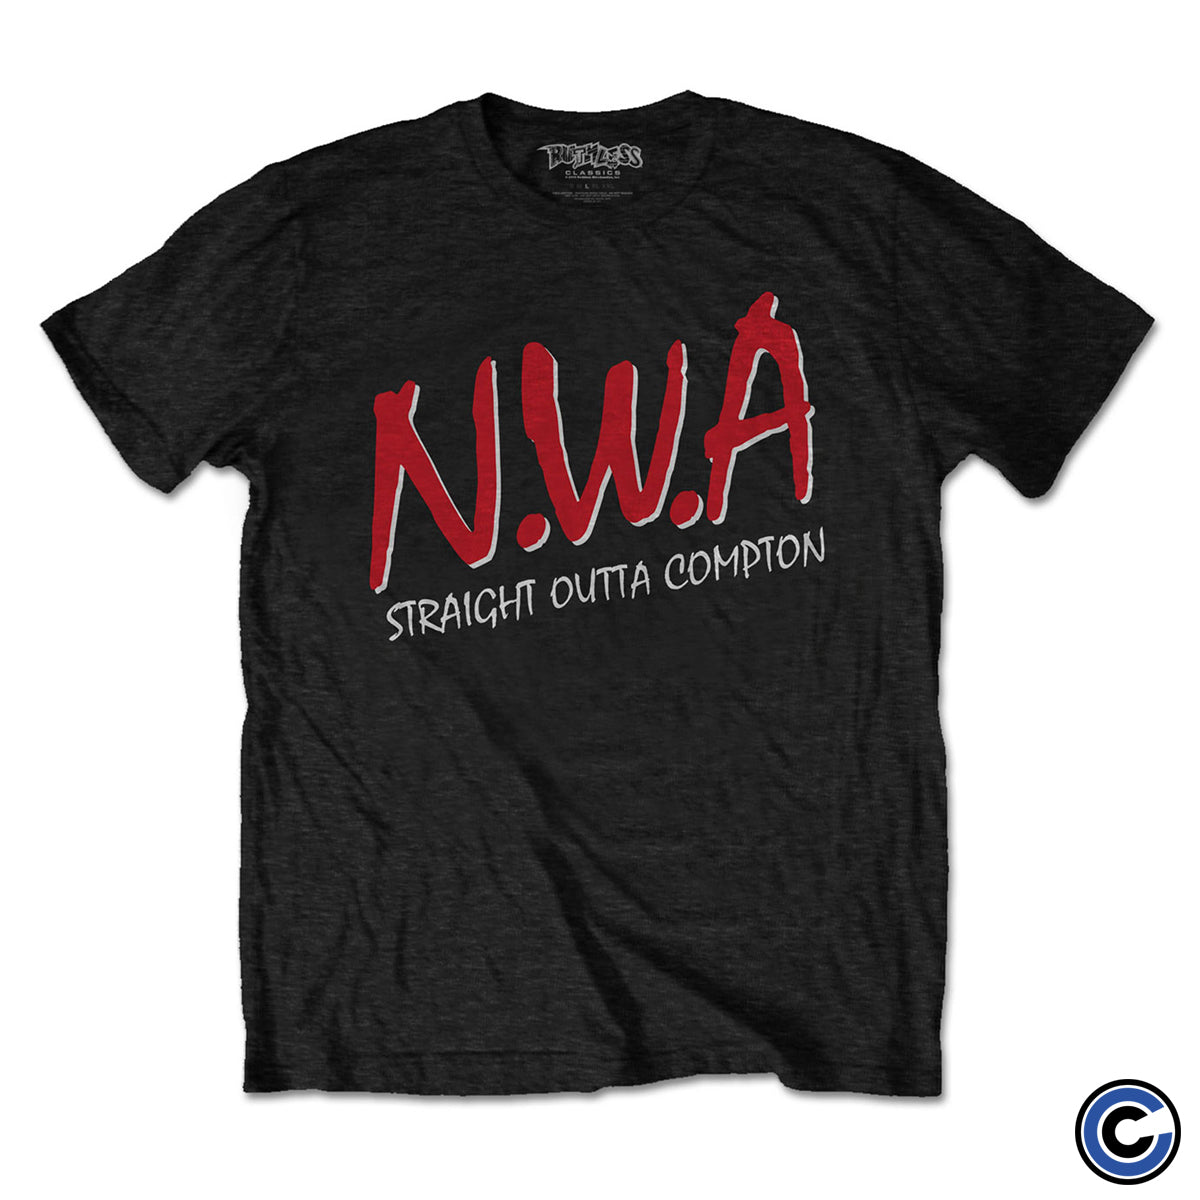 N.W.A. "Straight Outta Compton" Shirt